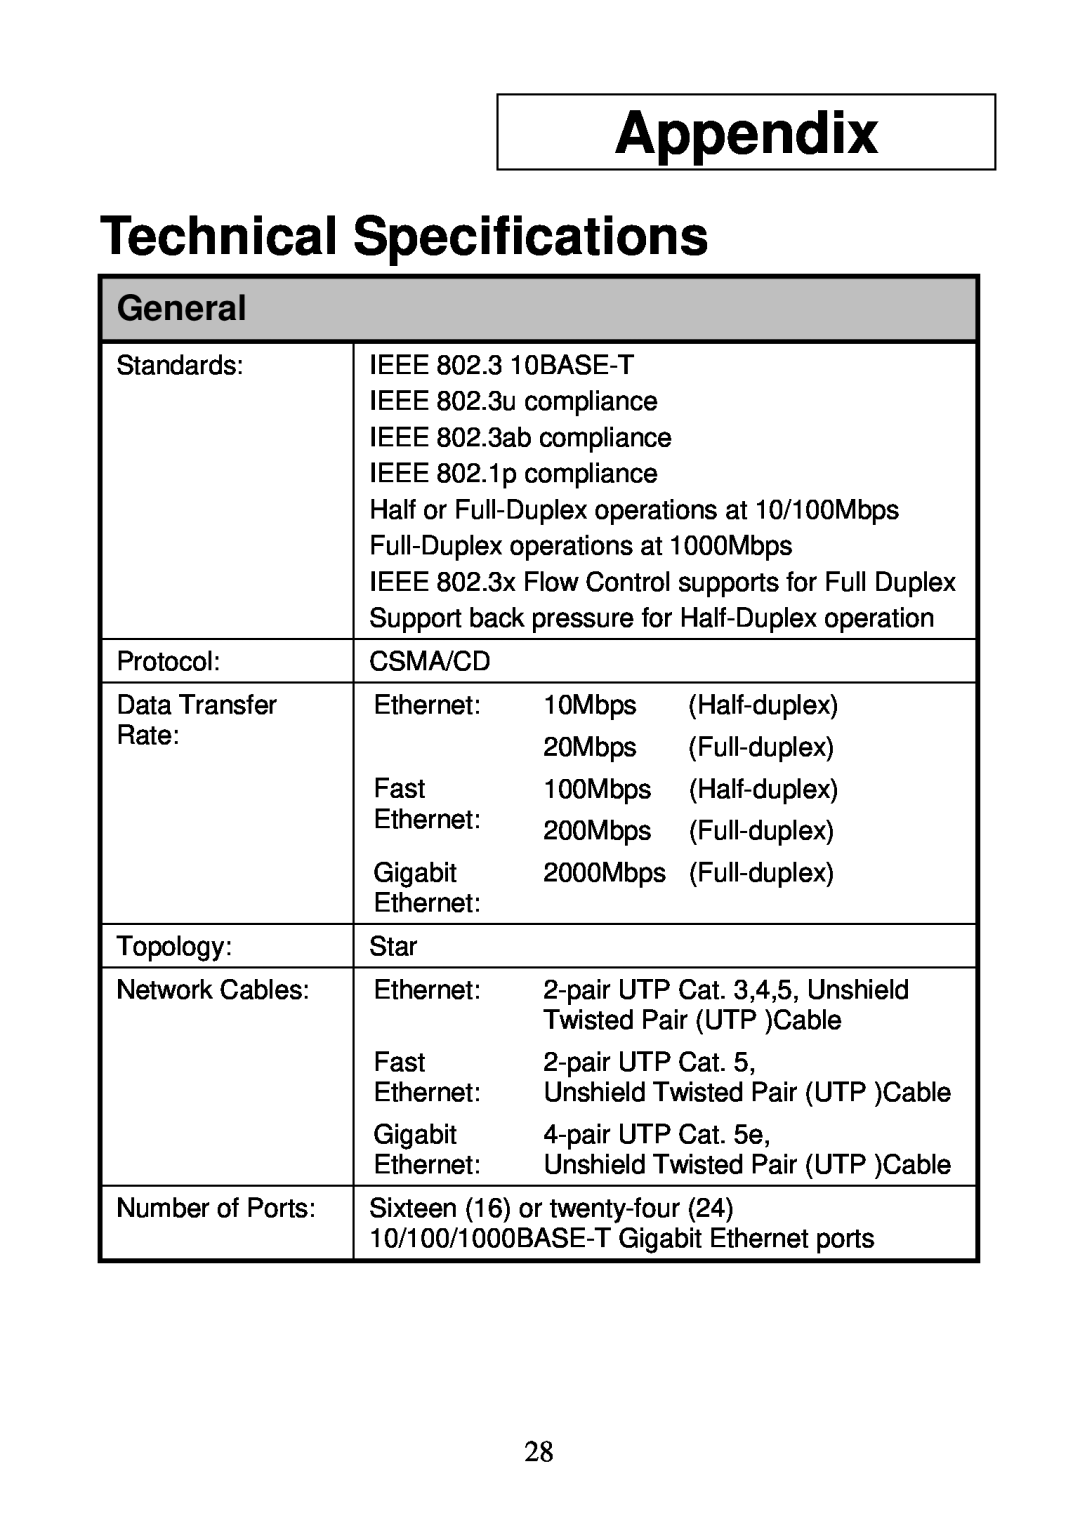 D-Link DGS-1024D, DGS-1016D manual Appendix, Technical Specifications, General 